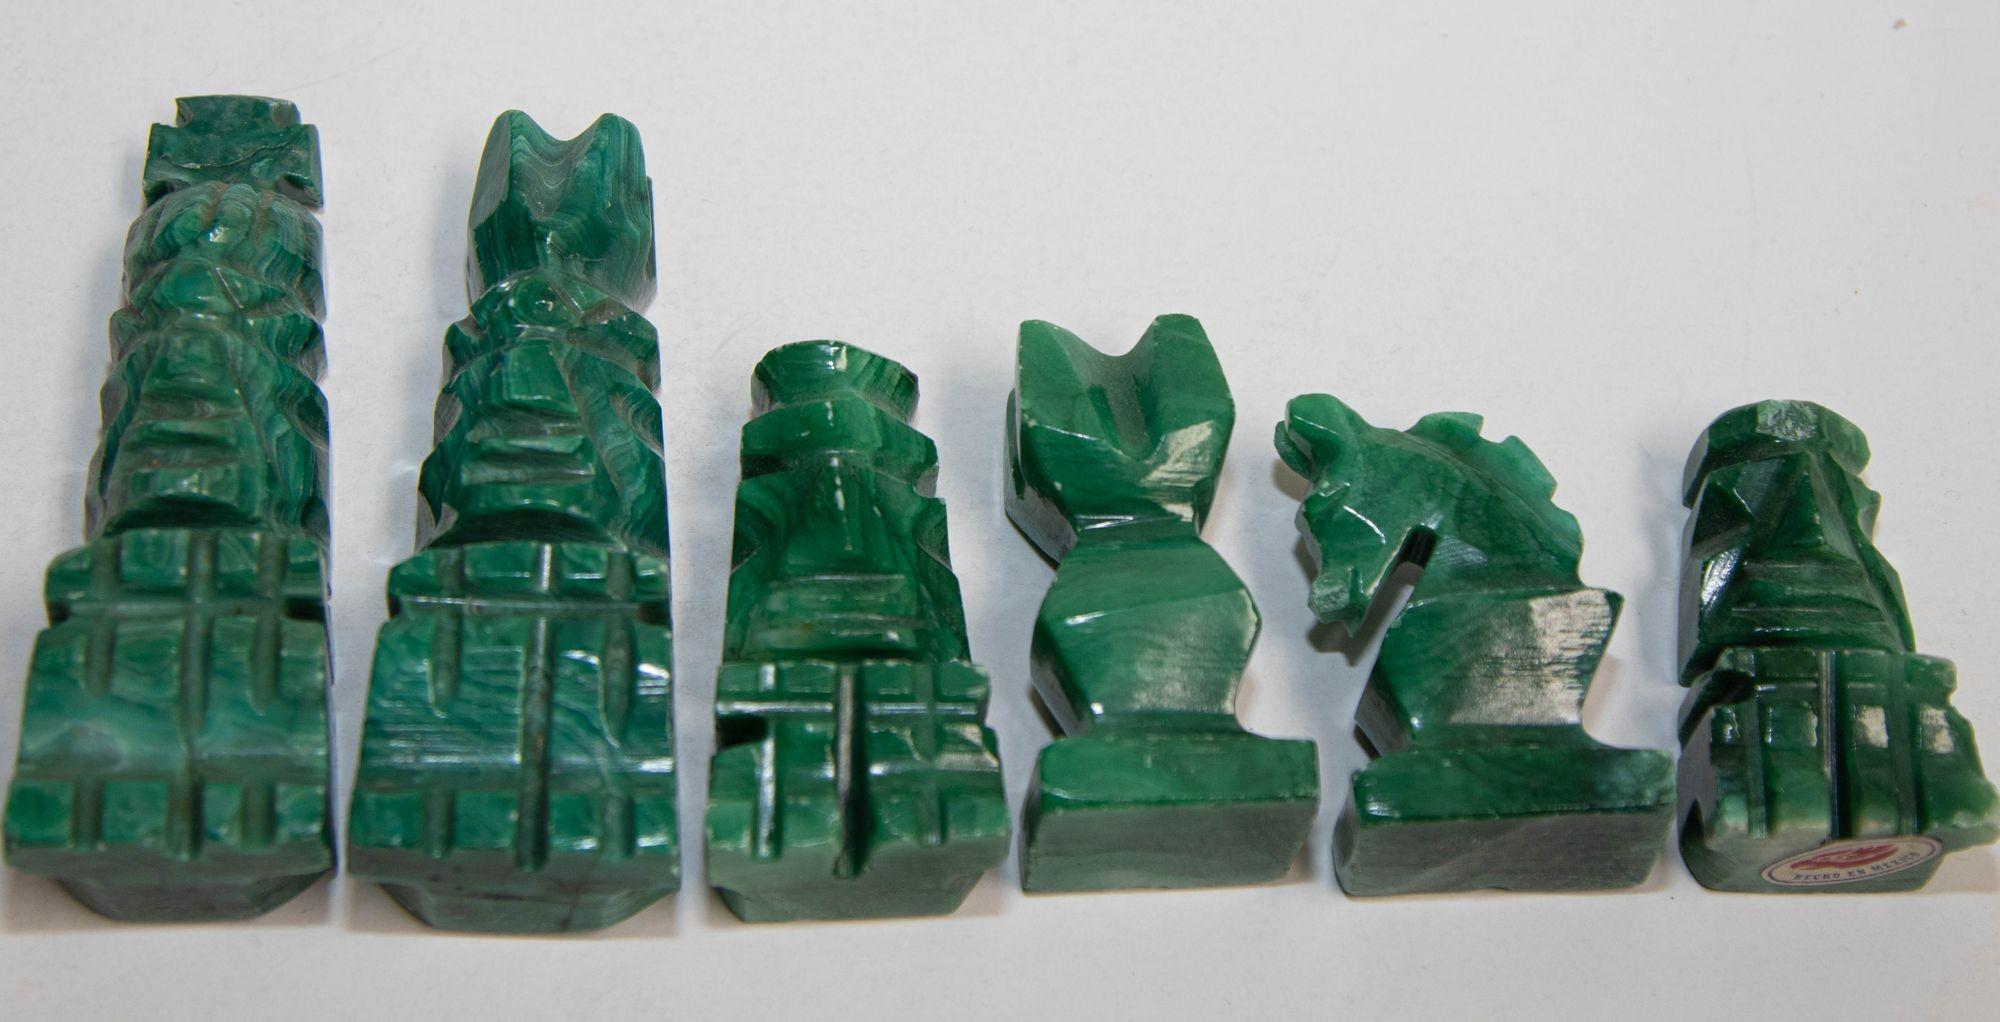 Mid-Century Modern Grand jeu d'échecs vintage en marbre avec pièces en onyx vert émeraude sculptées à la main